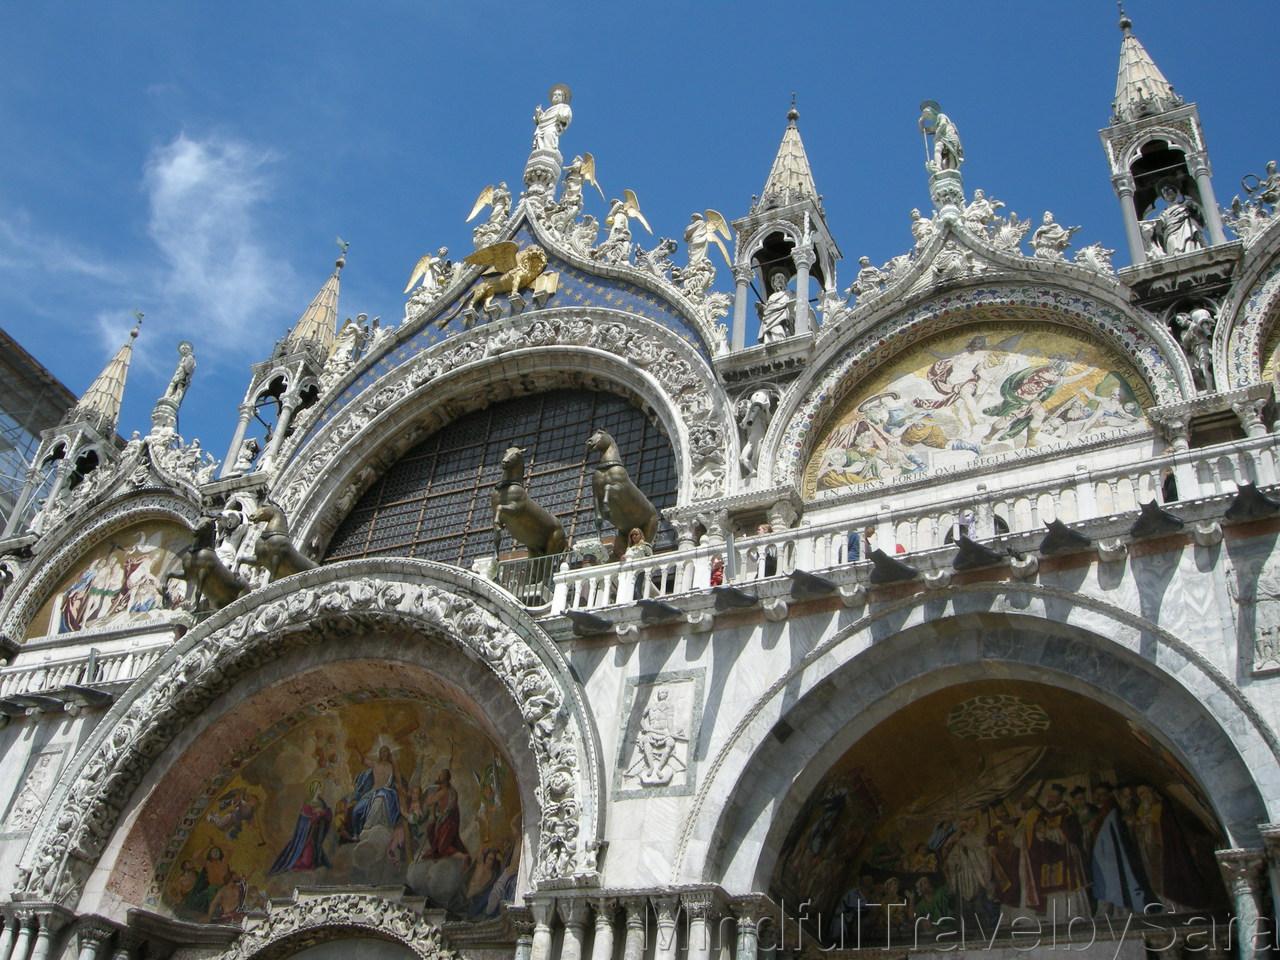 10 Lugares imprescindibles de Venecia